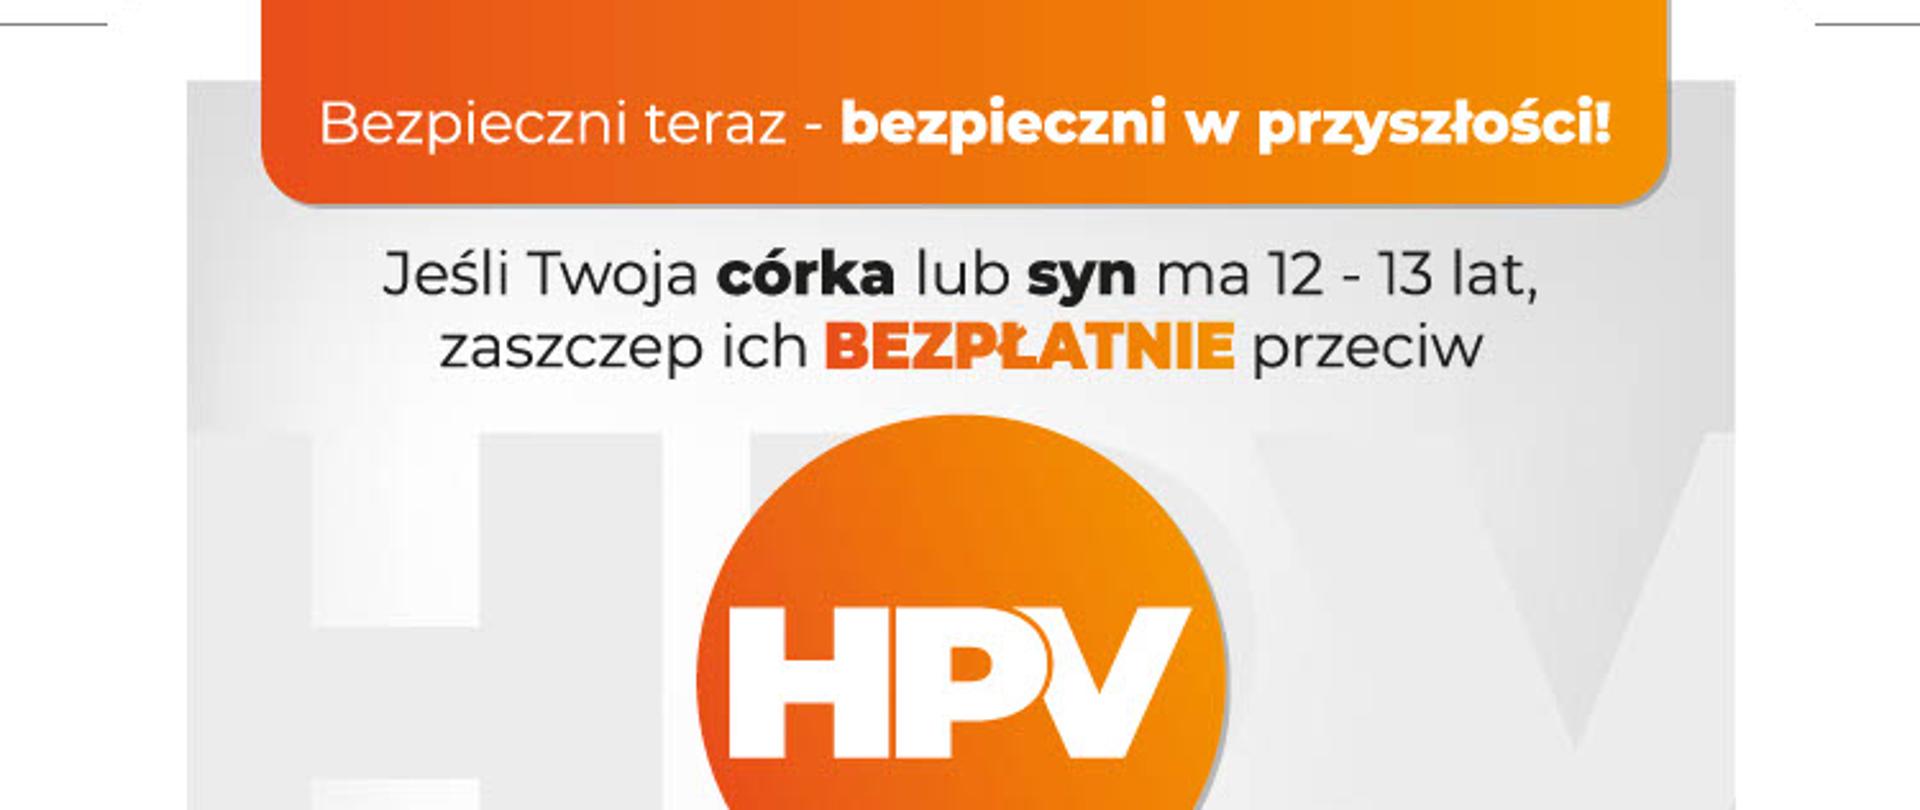 baner promujący szczepienia przeciwko HPV